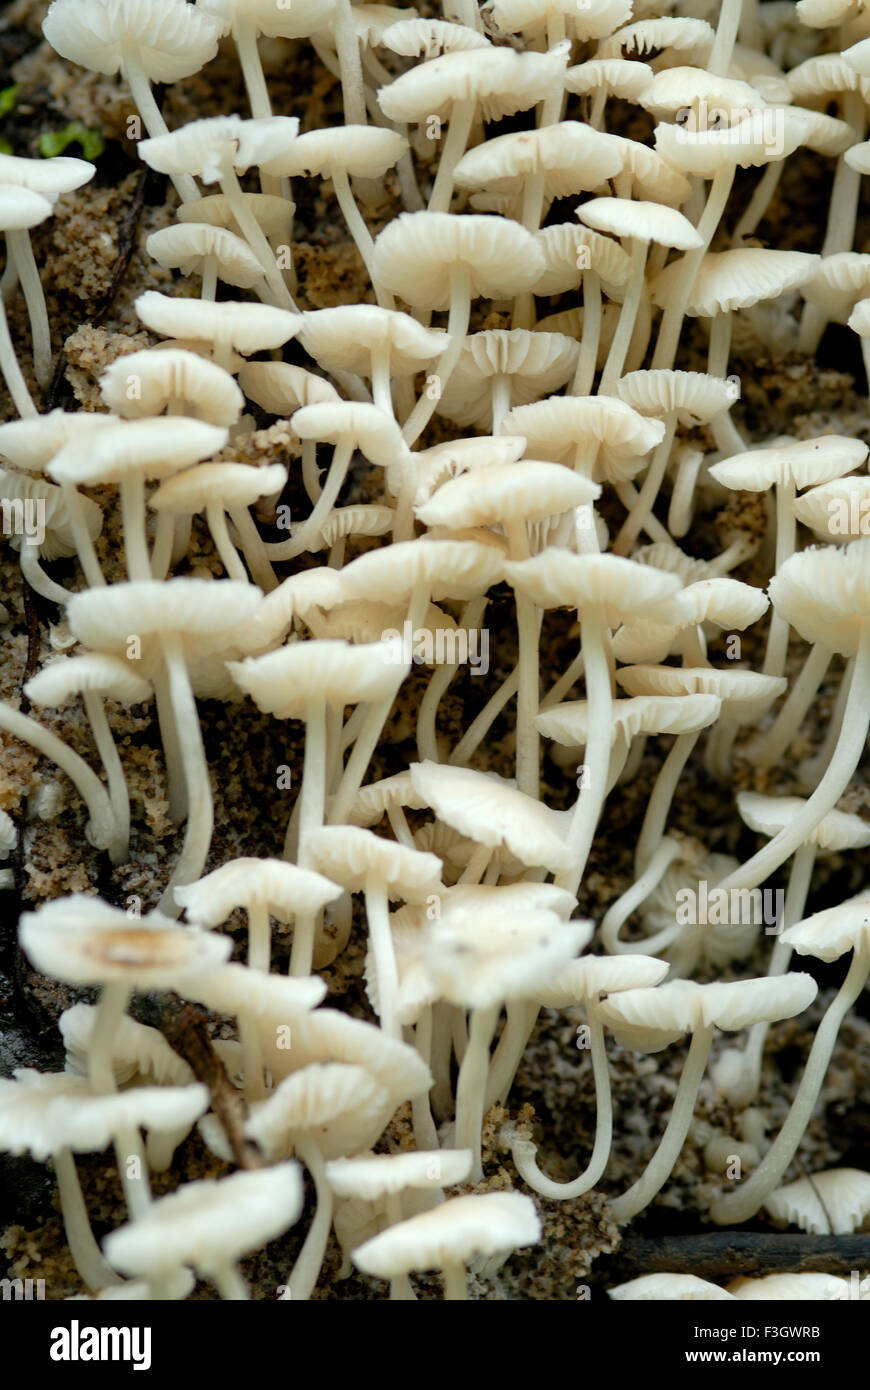 Les champignons hygrophorus petite taille sur la piste d'asangaon ; ; ; district de Thane Maharashtra Inde Banque D'Images